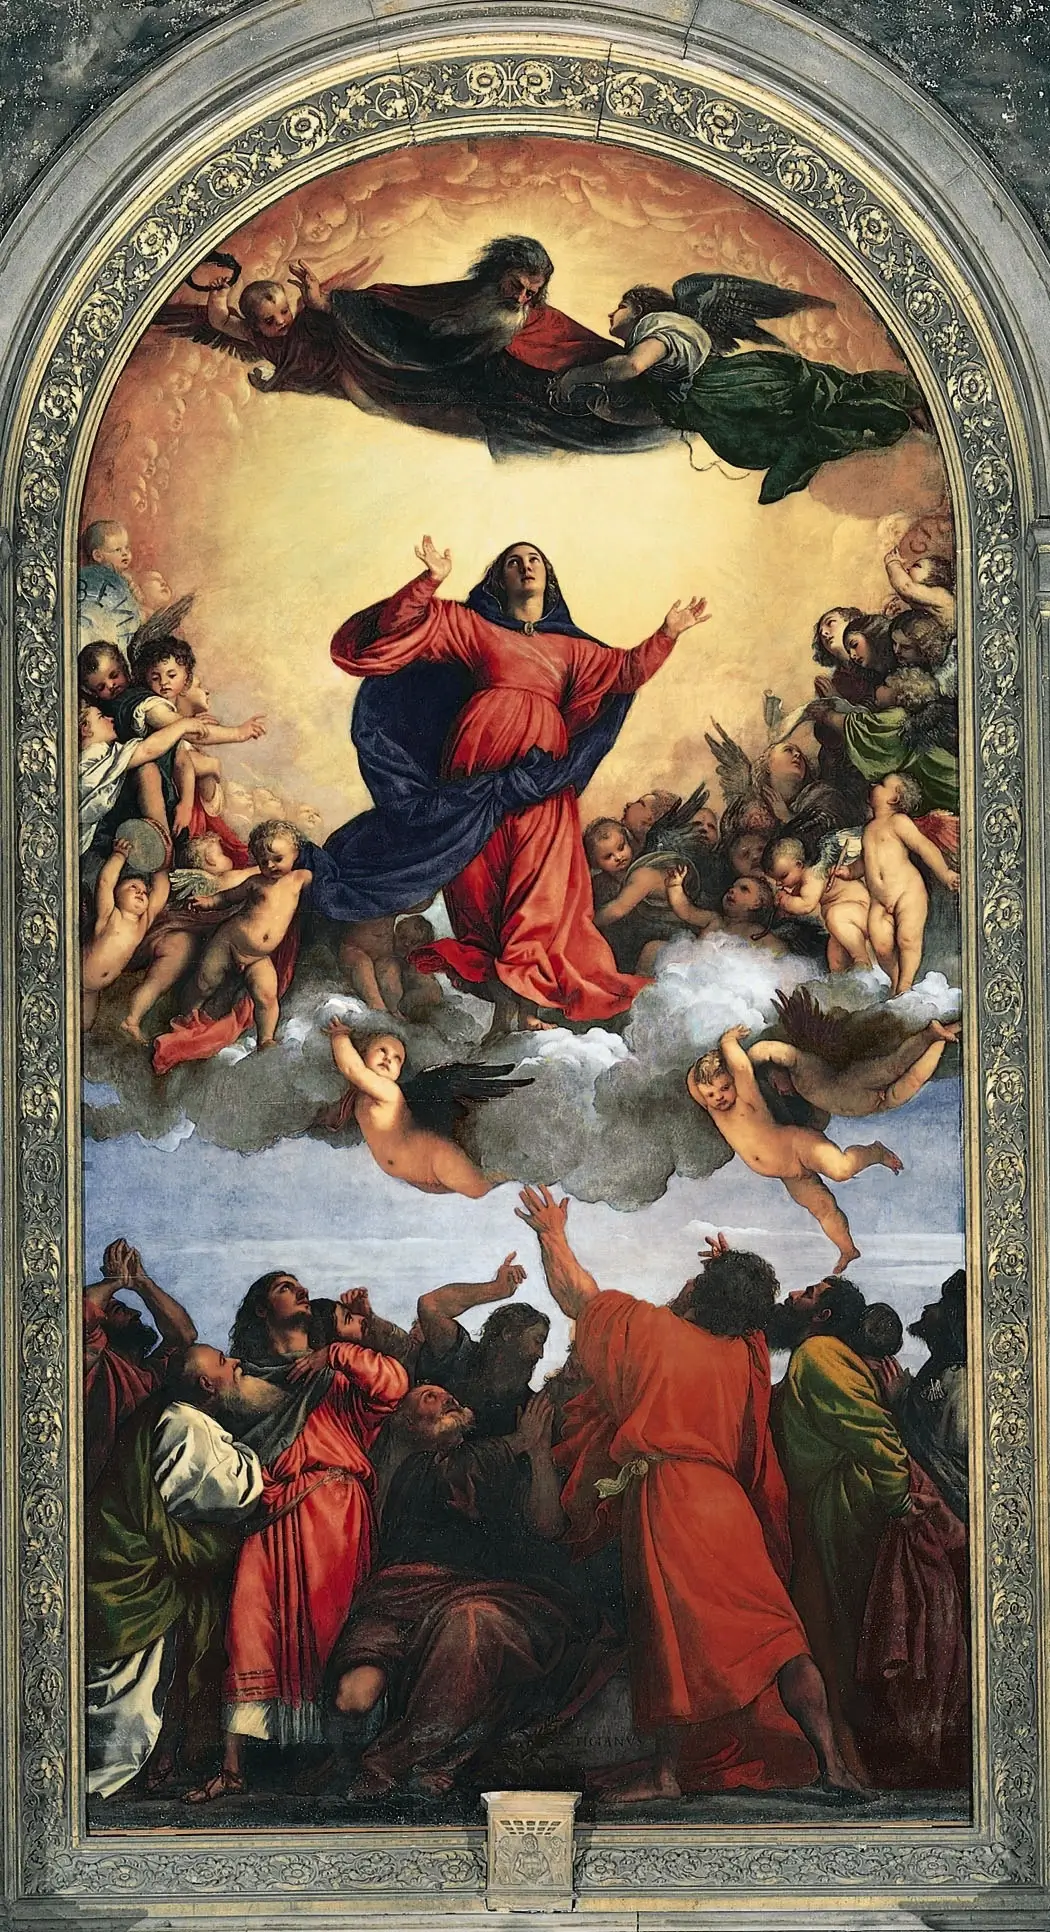 Titian, "Assumption of the Virgin", 1518